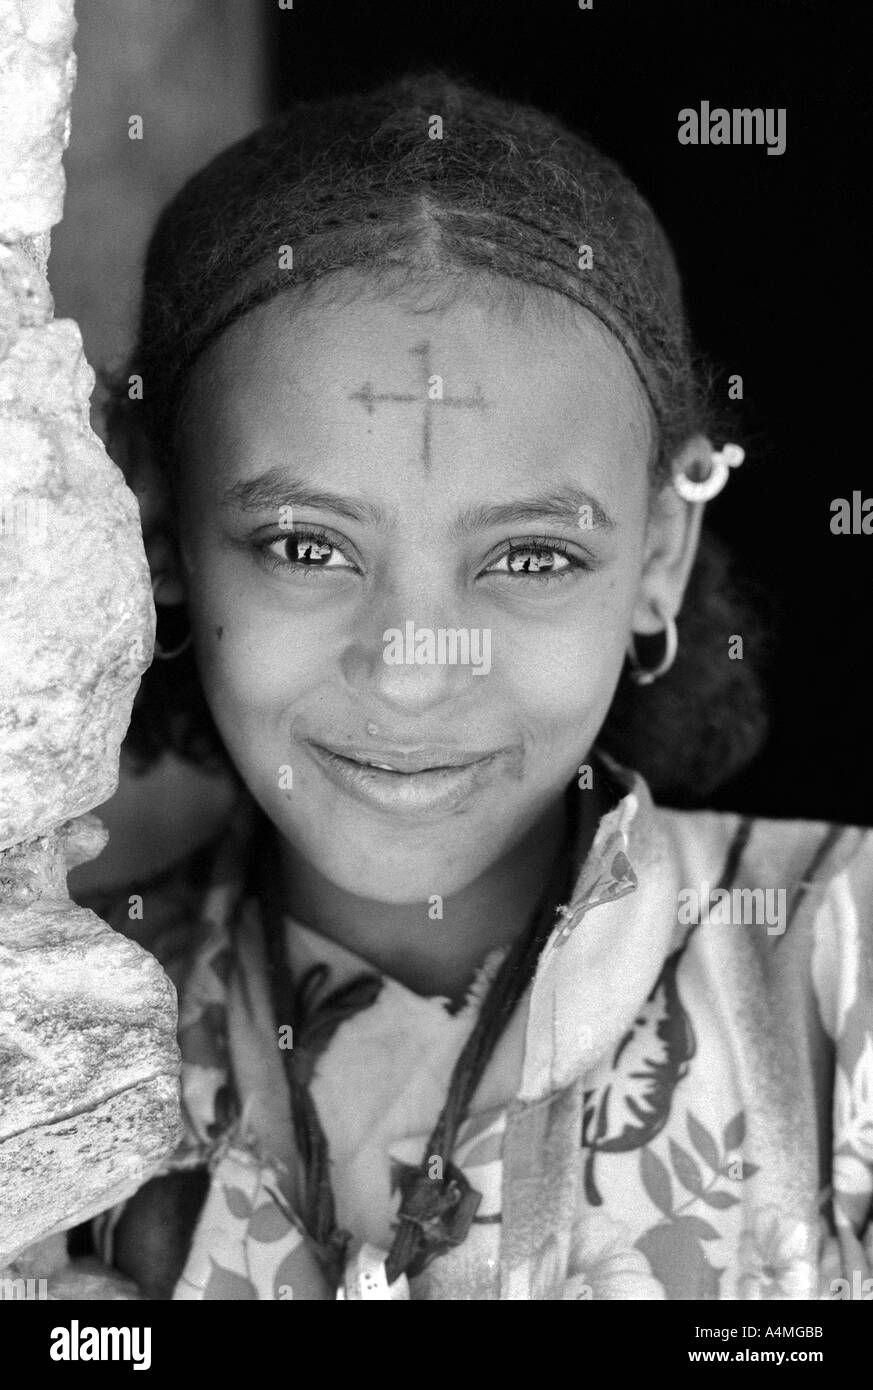 S/W-Porträt eines lächelnden Mädchens mit flüssigen Augen, traditioneller Frisur und einem koptischen christlichen Kreuz auf der Stirn. Adua, Äthiopien, Afrika Stockfoto